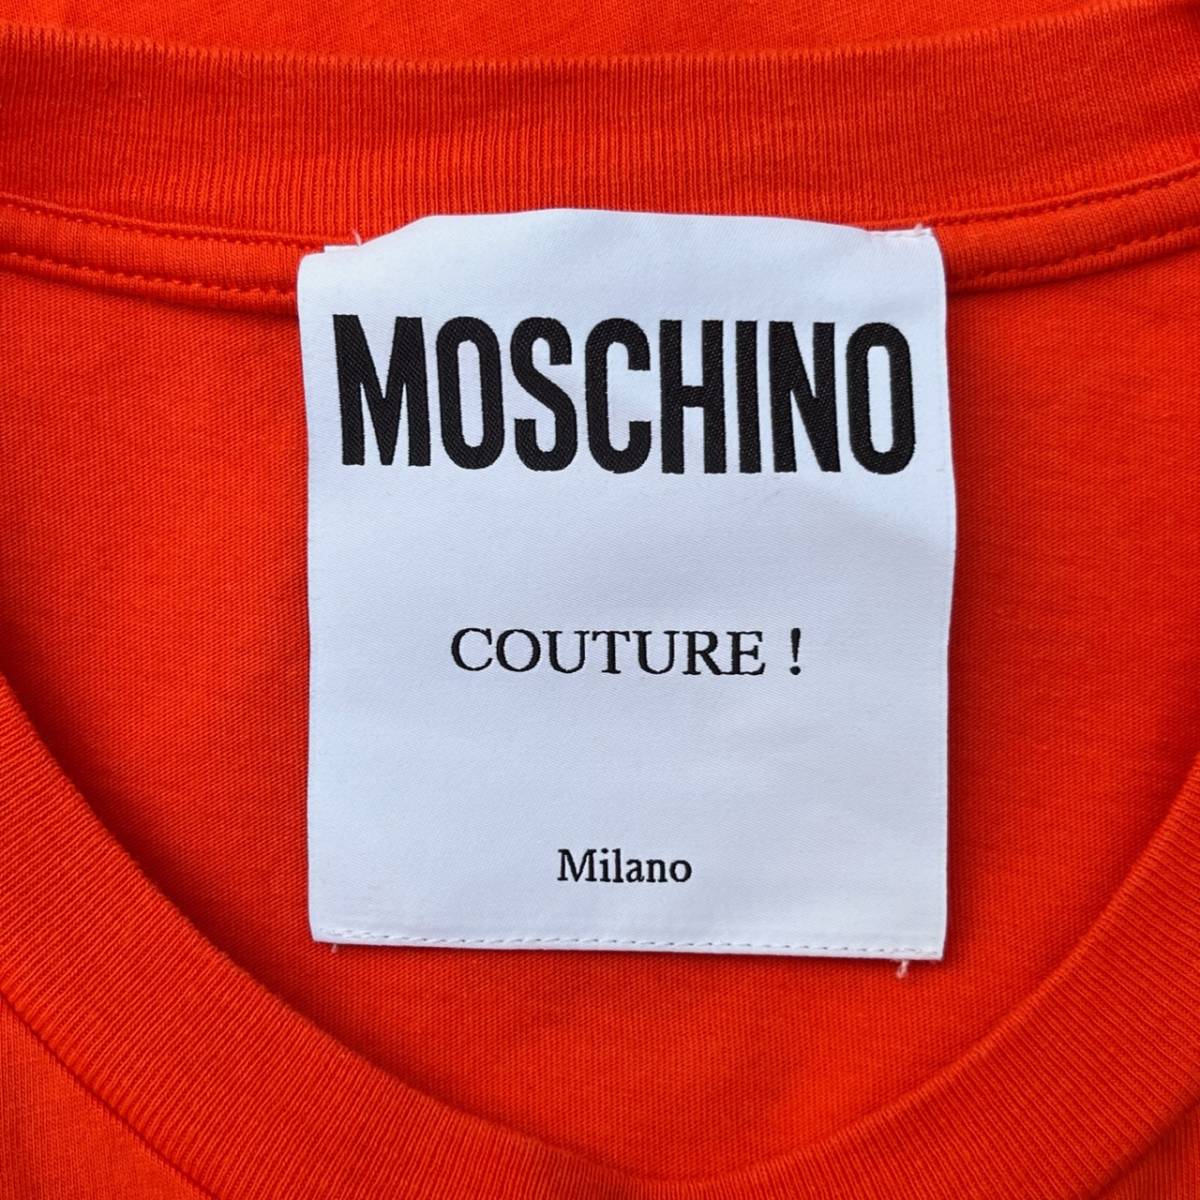 MOSCHINO モスキーノ Sサイズ チャックロゴ Tシャツ 半袖 オレンジ